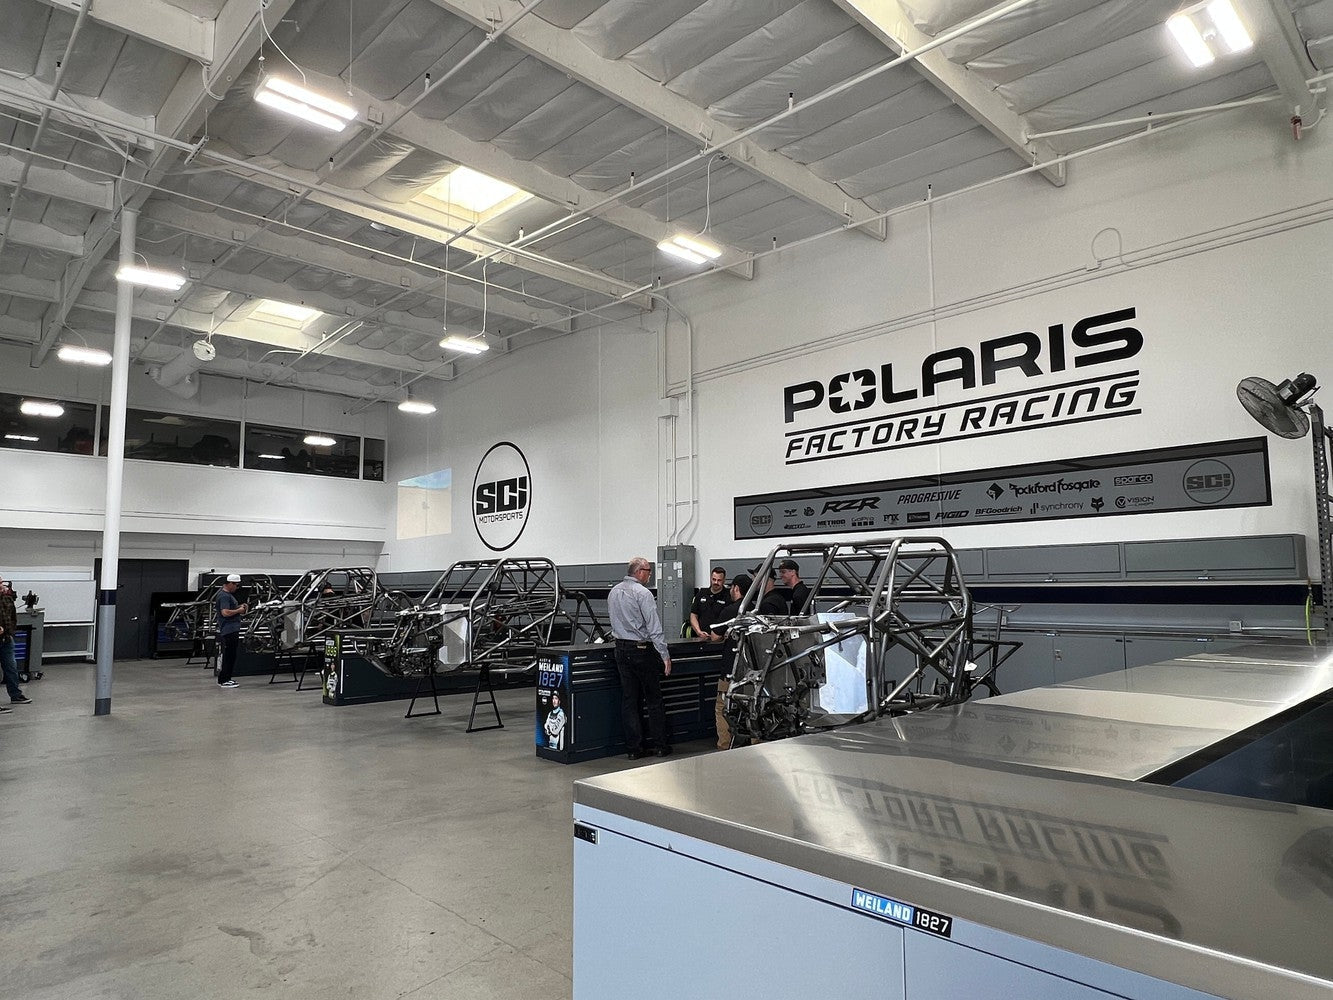 BoxoUSA Partnership with Polaris Factory Racing Team (SCI)-Boxo USA